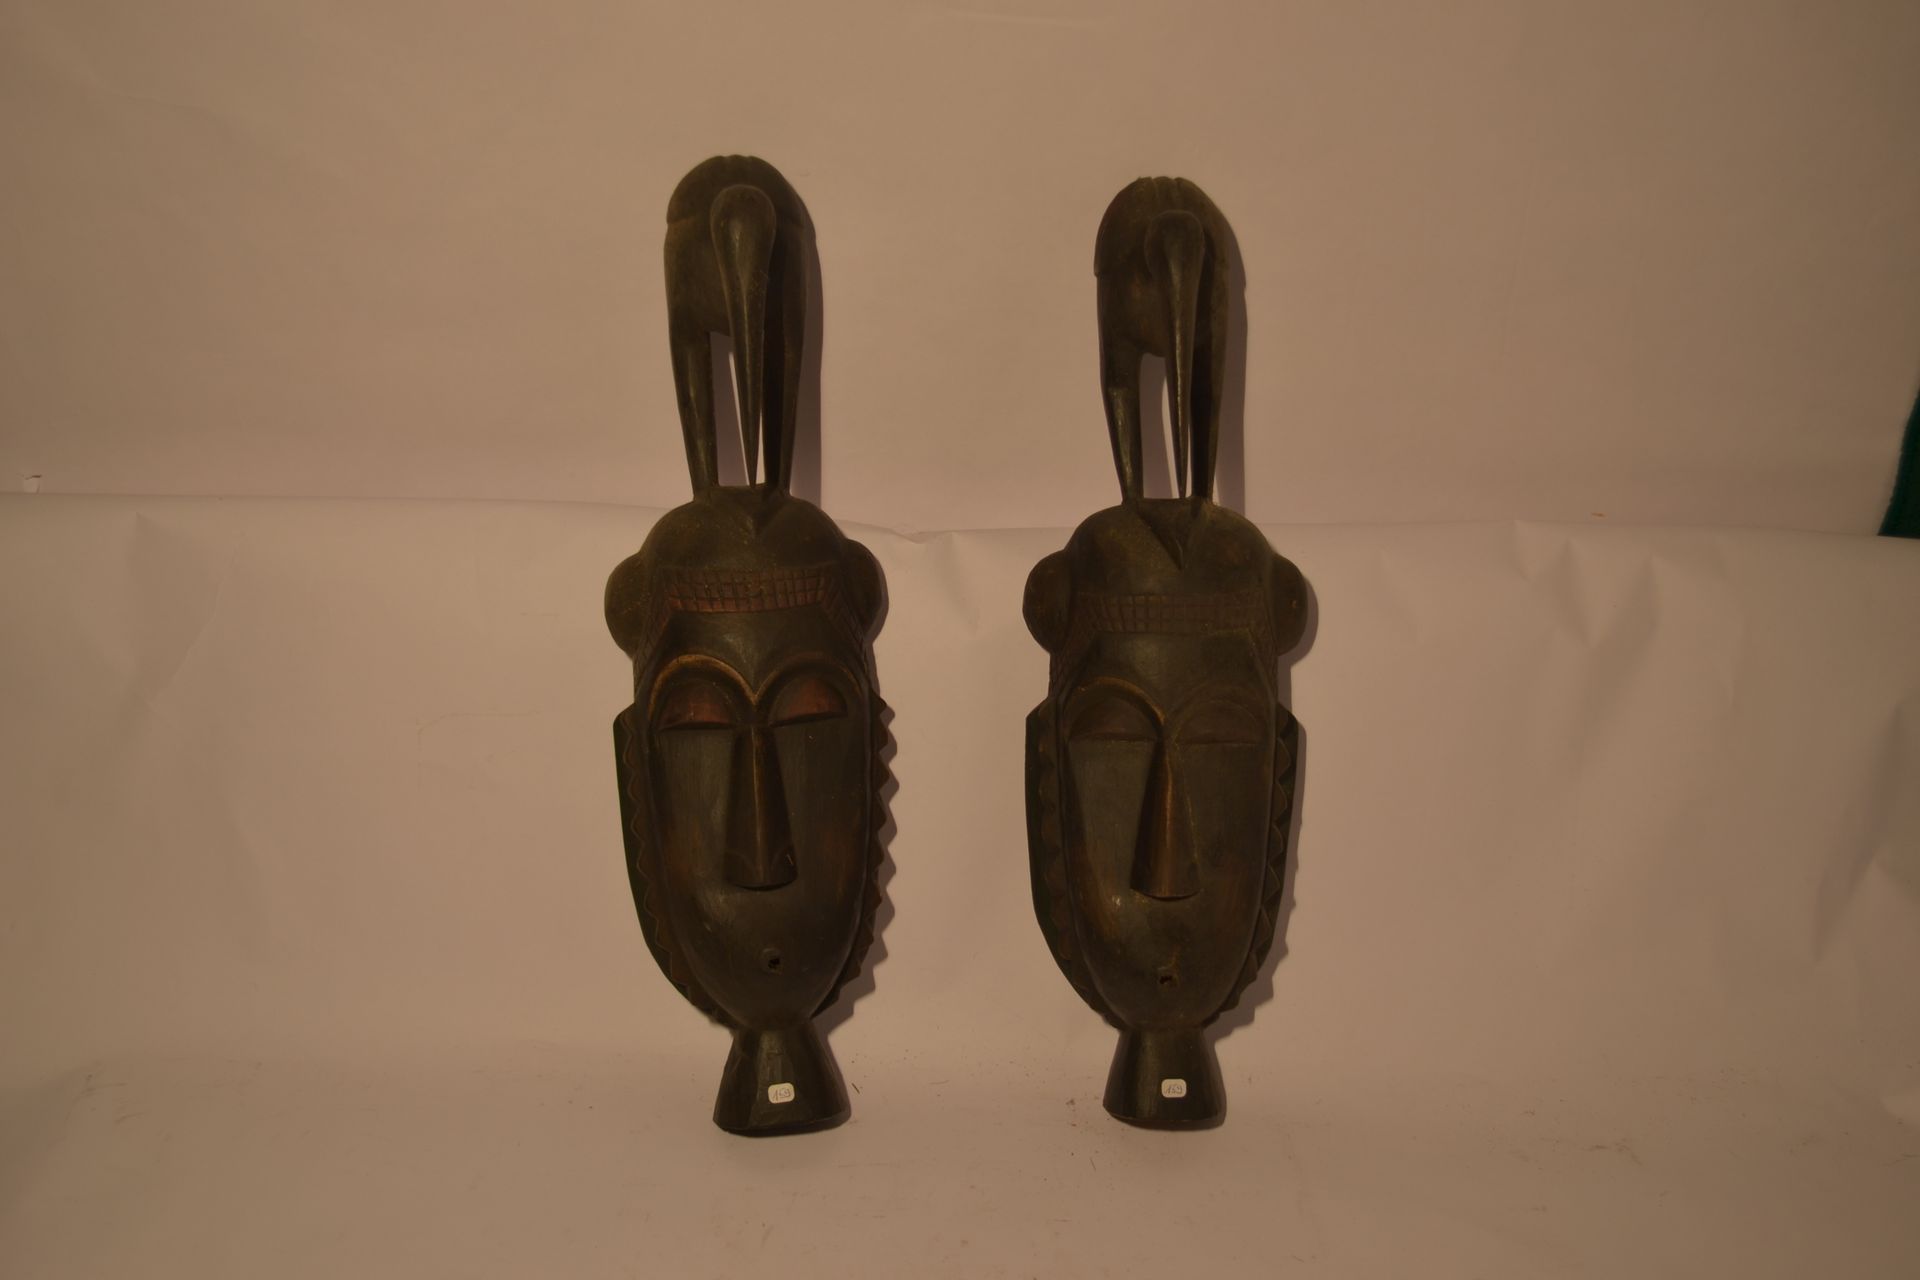 Null 一对原始人和鸟类的面具（可悬挂或站立

异国情调的木材

48 x 14 x 10 厘米

重量：1公斤